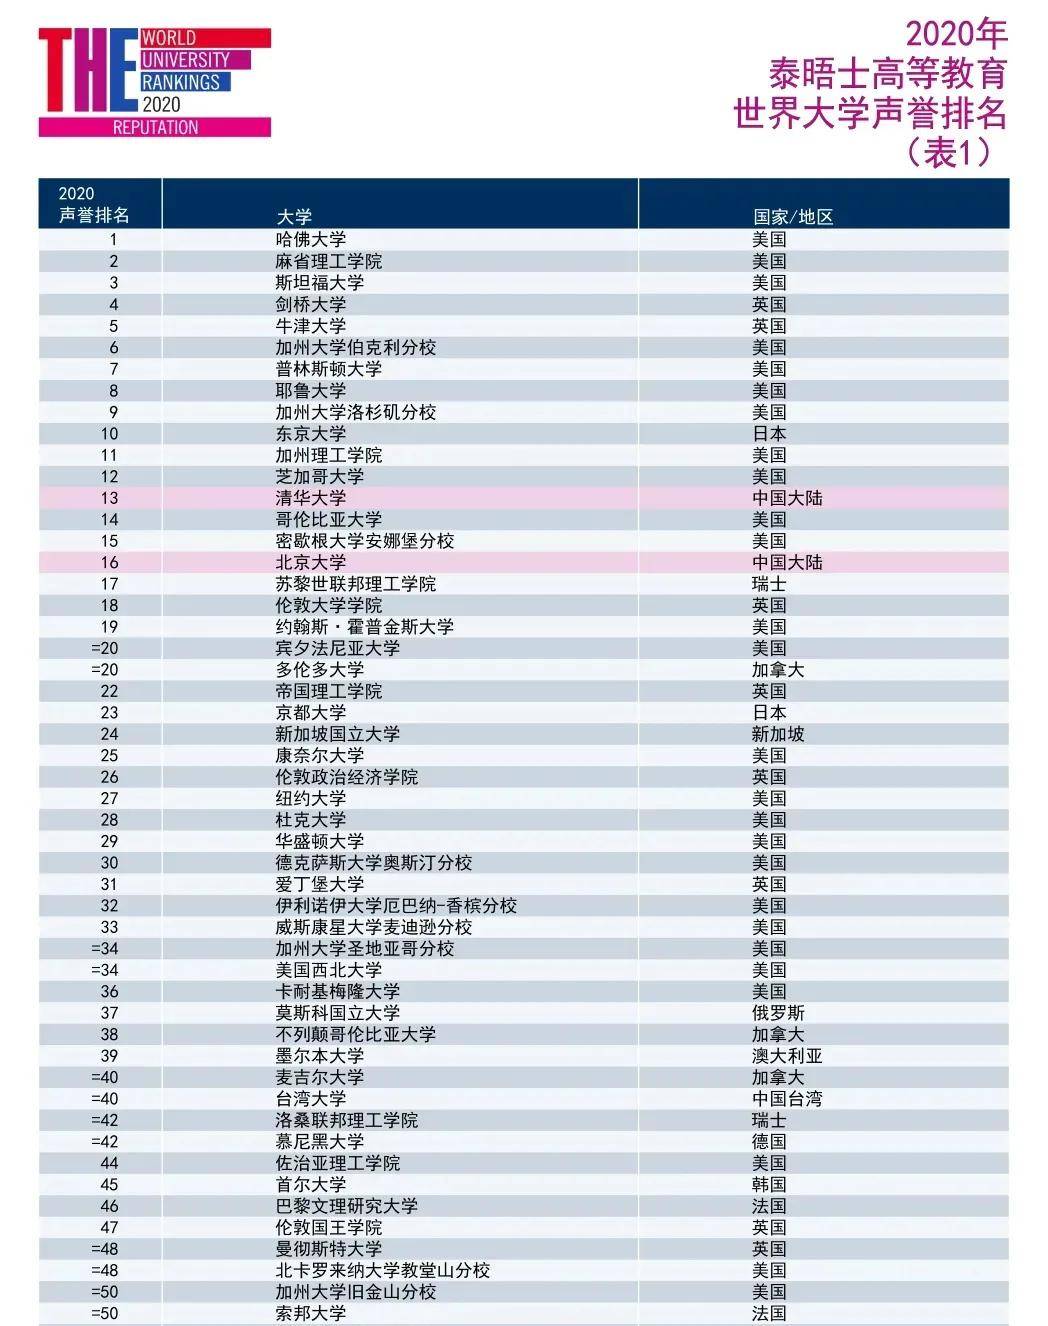 2020中国大学排名200排名_2020中国大学留学生人数排名200强:第1名并非清华